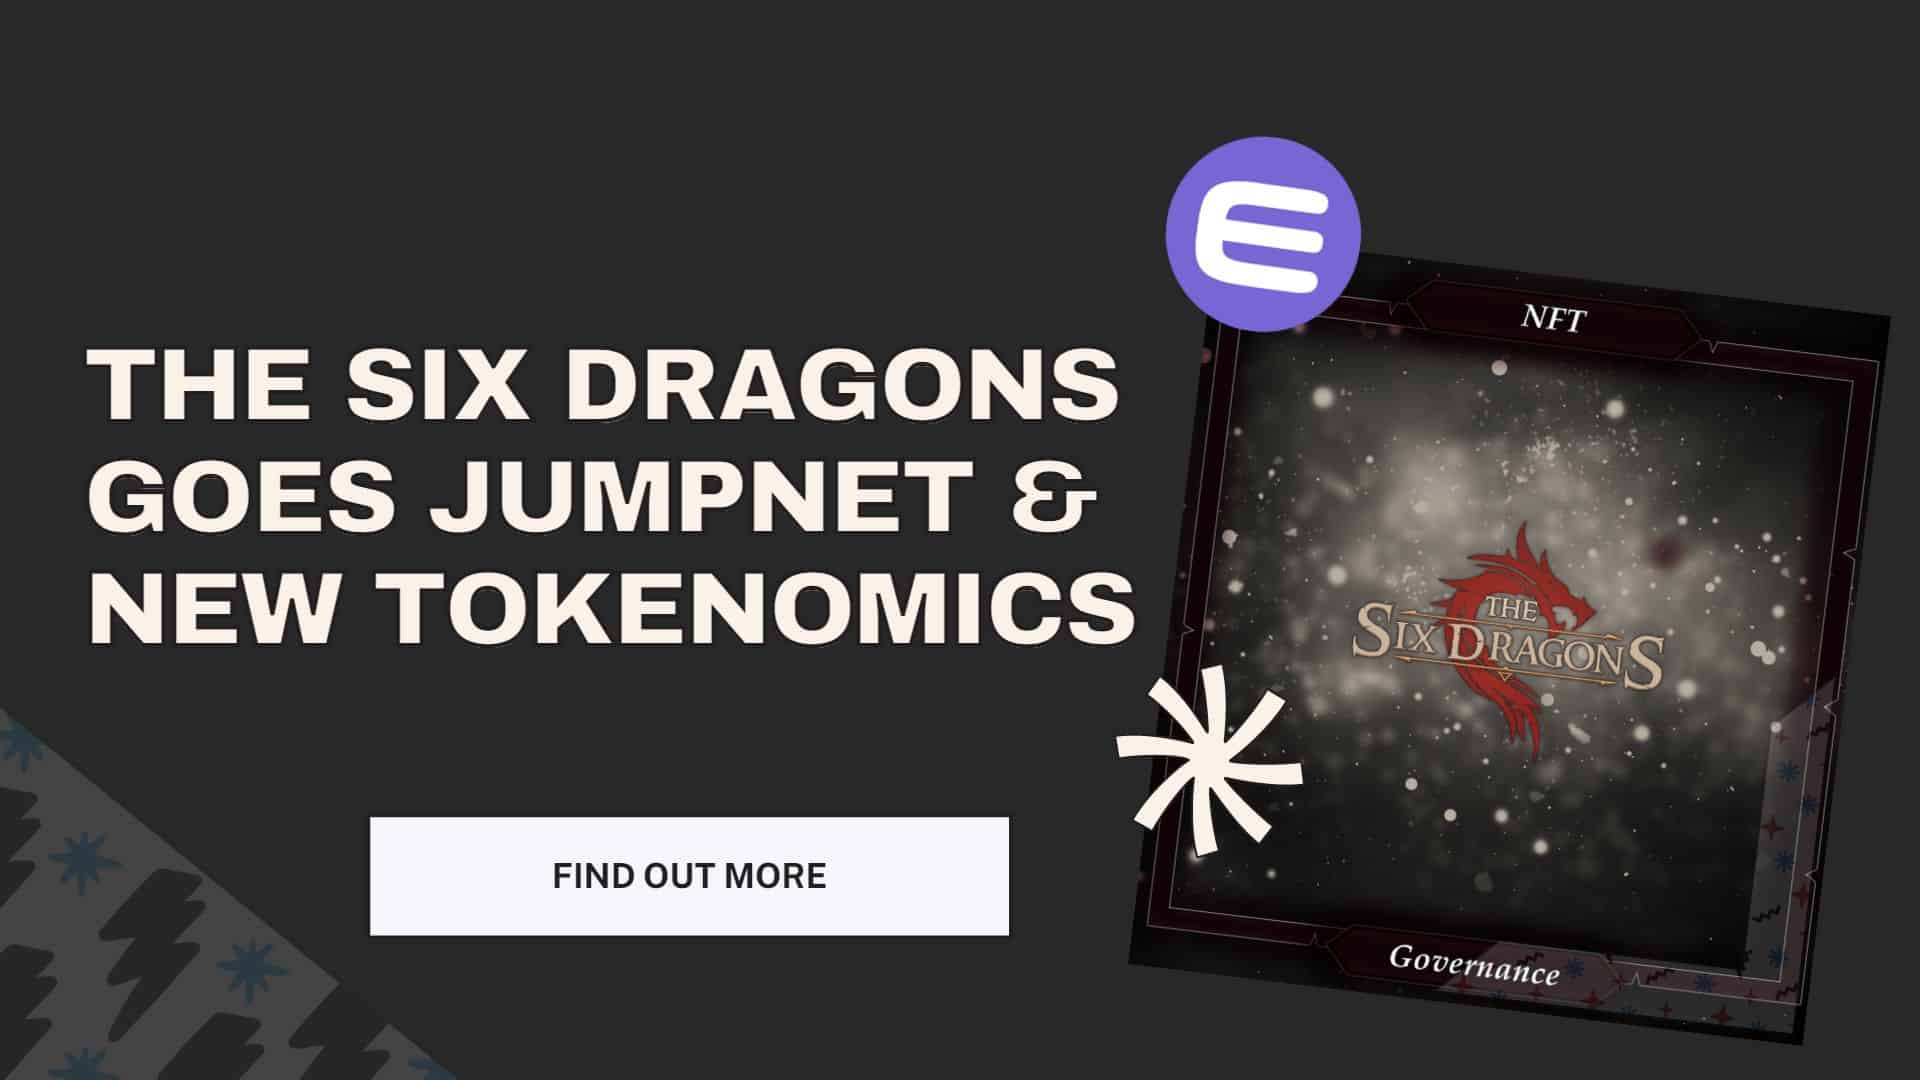 The Six Dragons Jumpnet & Tokenomics